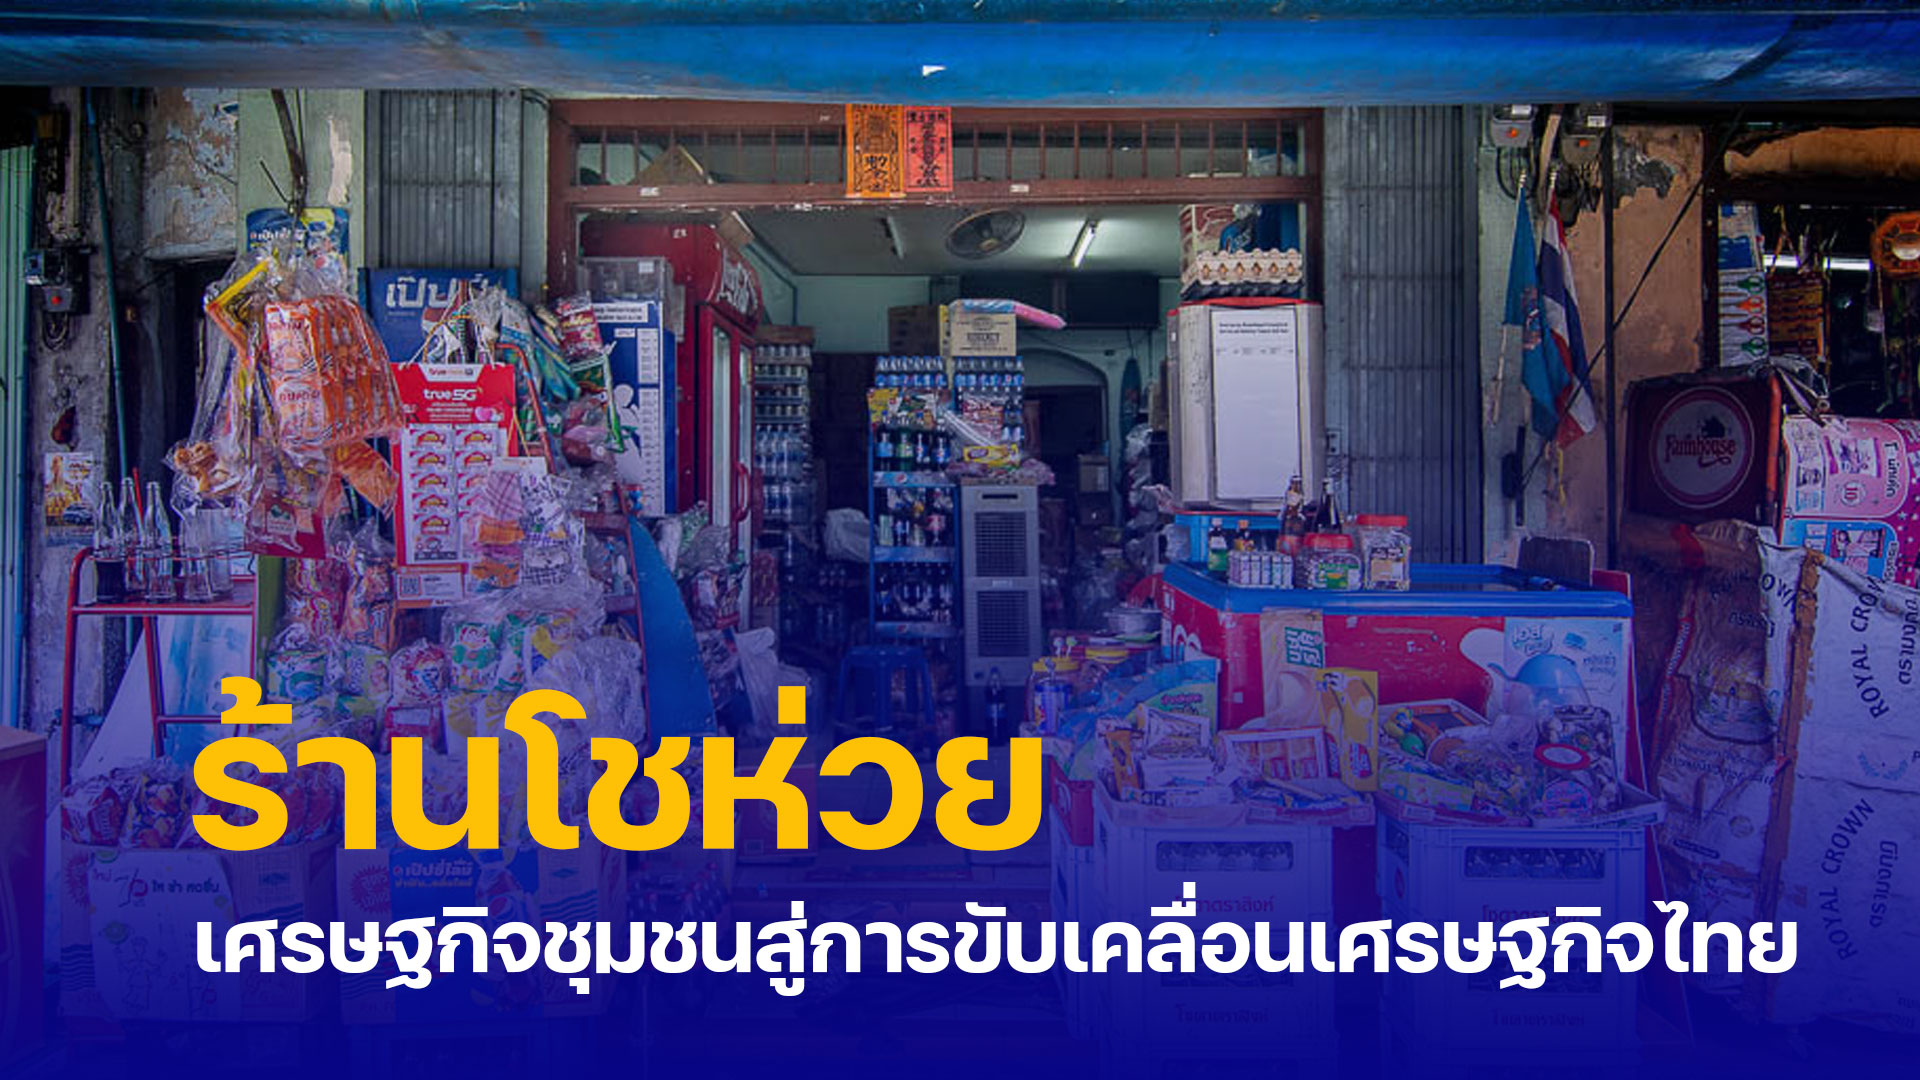 ร้านโชห่วย เศรษฐกิจชุมชนสู่การขับเคลื่อนเศรษฐกิจไทย